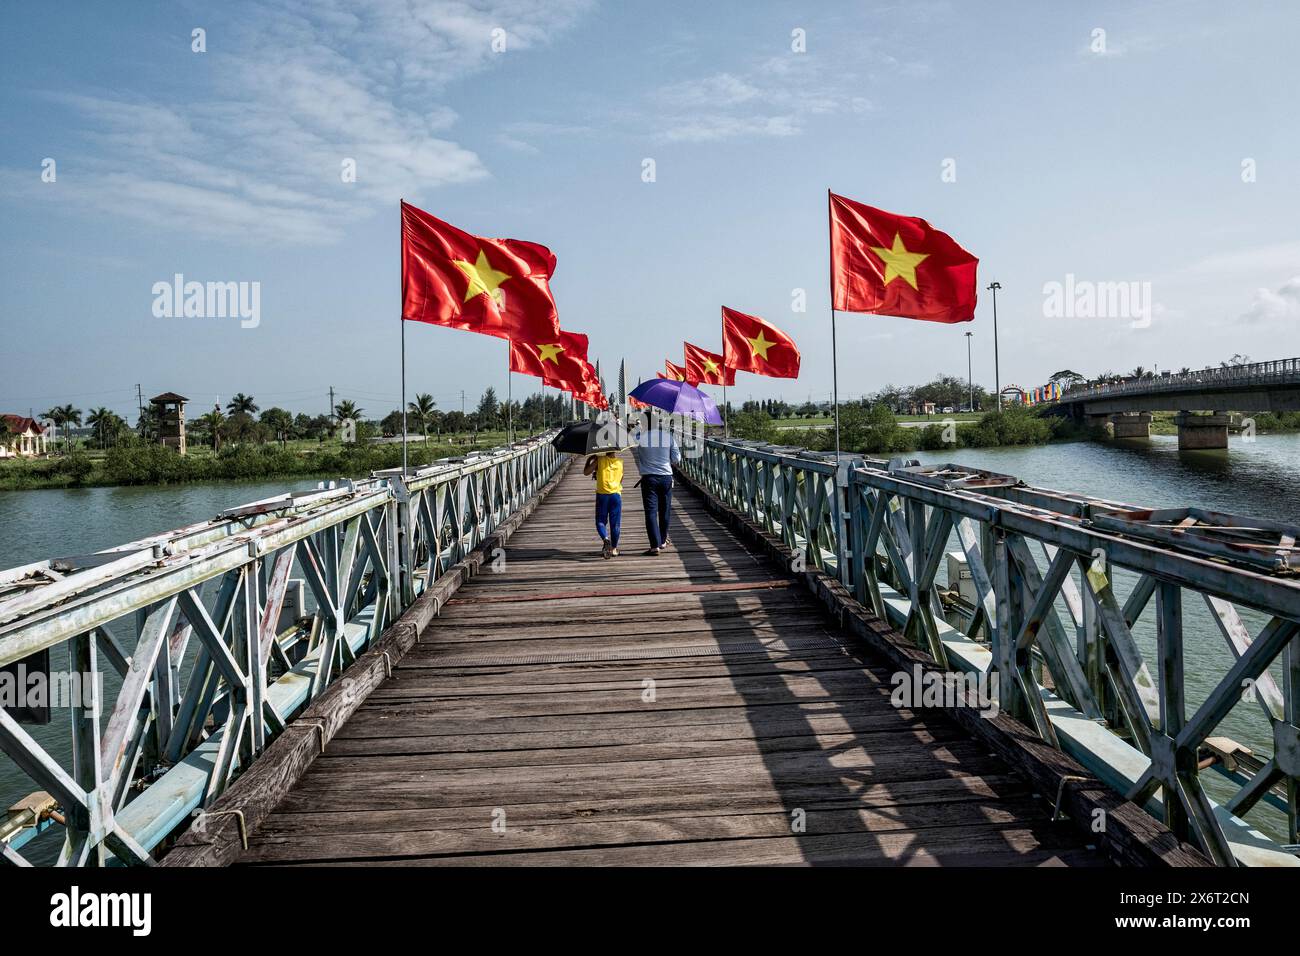 Ponte di Hien Luong, Vietnam, diciassettesimo parallelo, ponte tra il Vietnam del Nord e il Vietnam del Sud Foto Stock